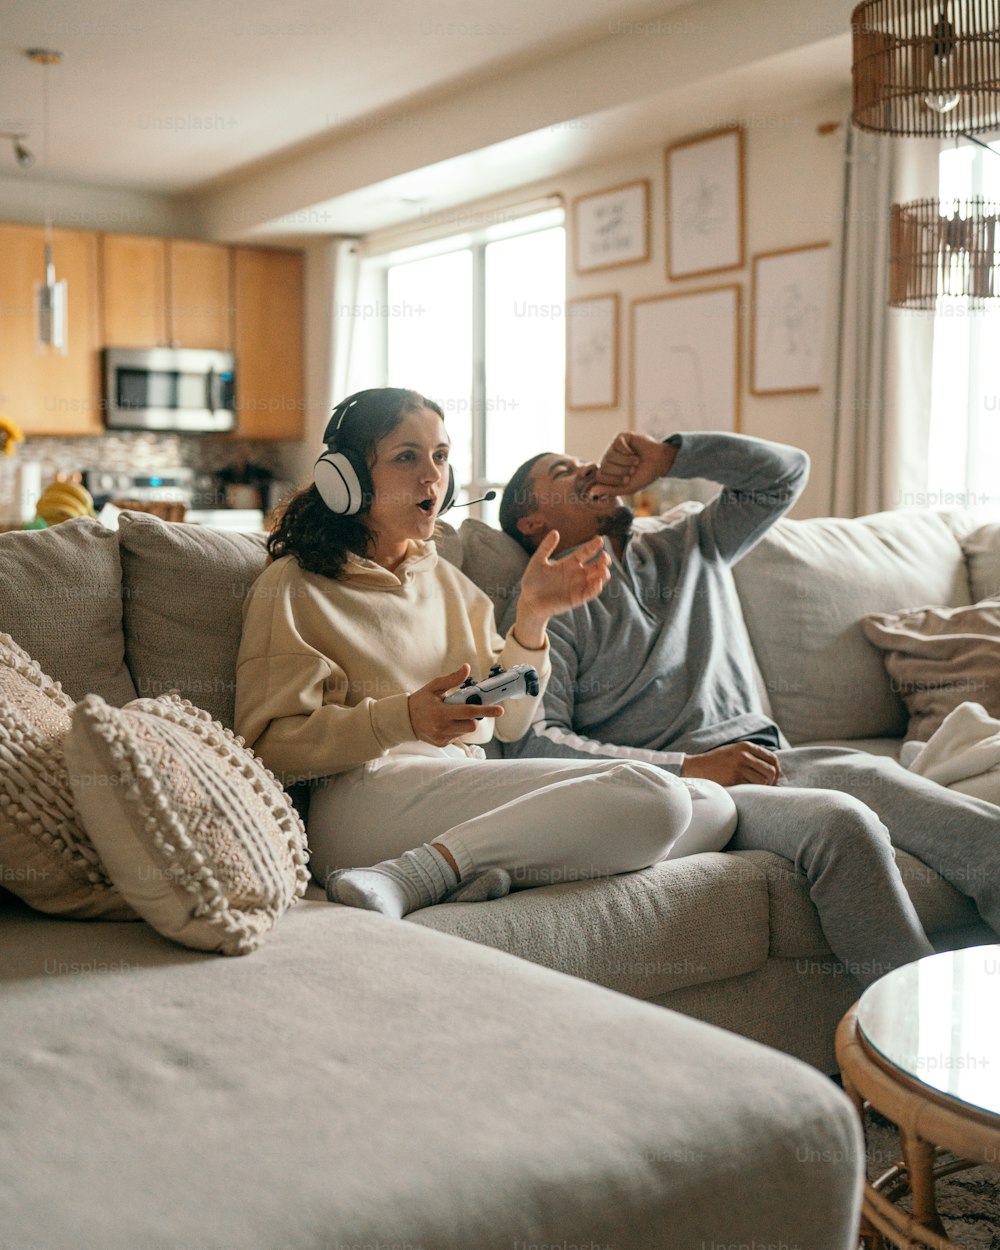 Ein Mann und eine Frau sitzen auf einer Couch und spielen ein Videospiel